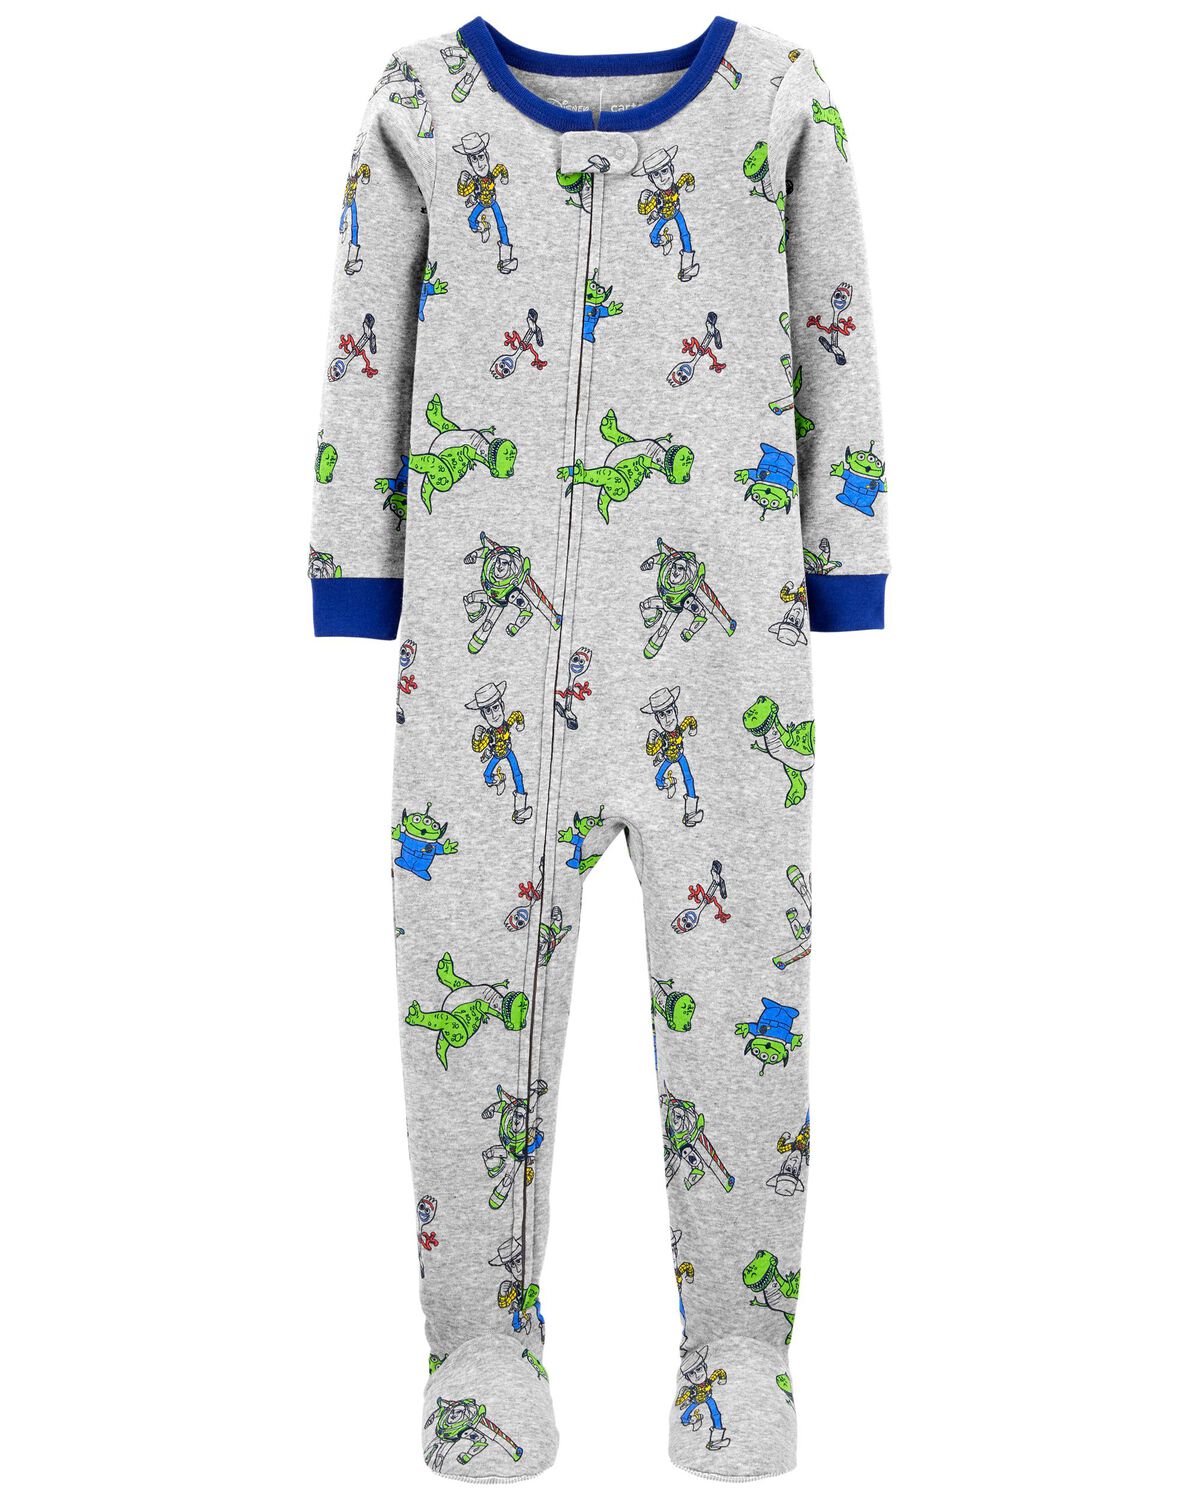 Toddler 1-Piece Toy Story 100% Snug Fit Cotton Pajamas